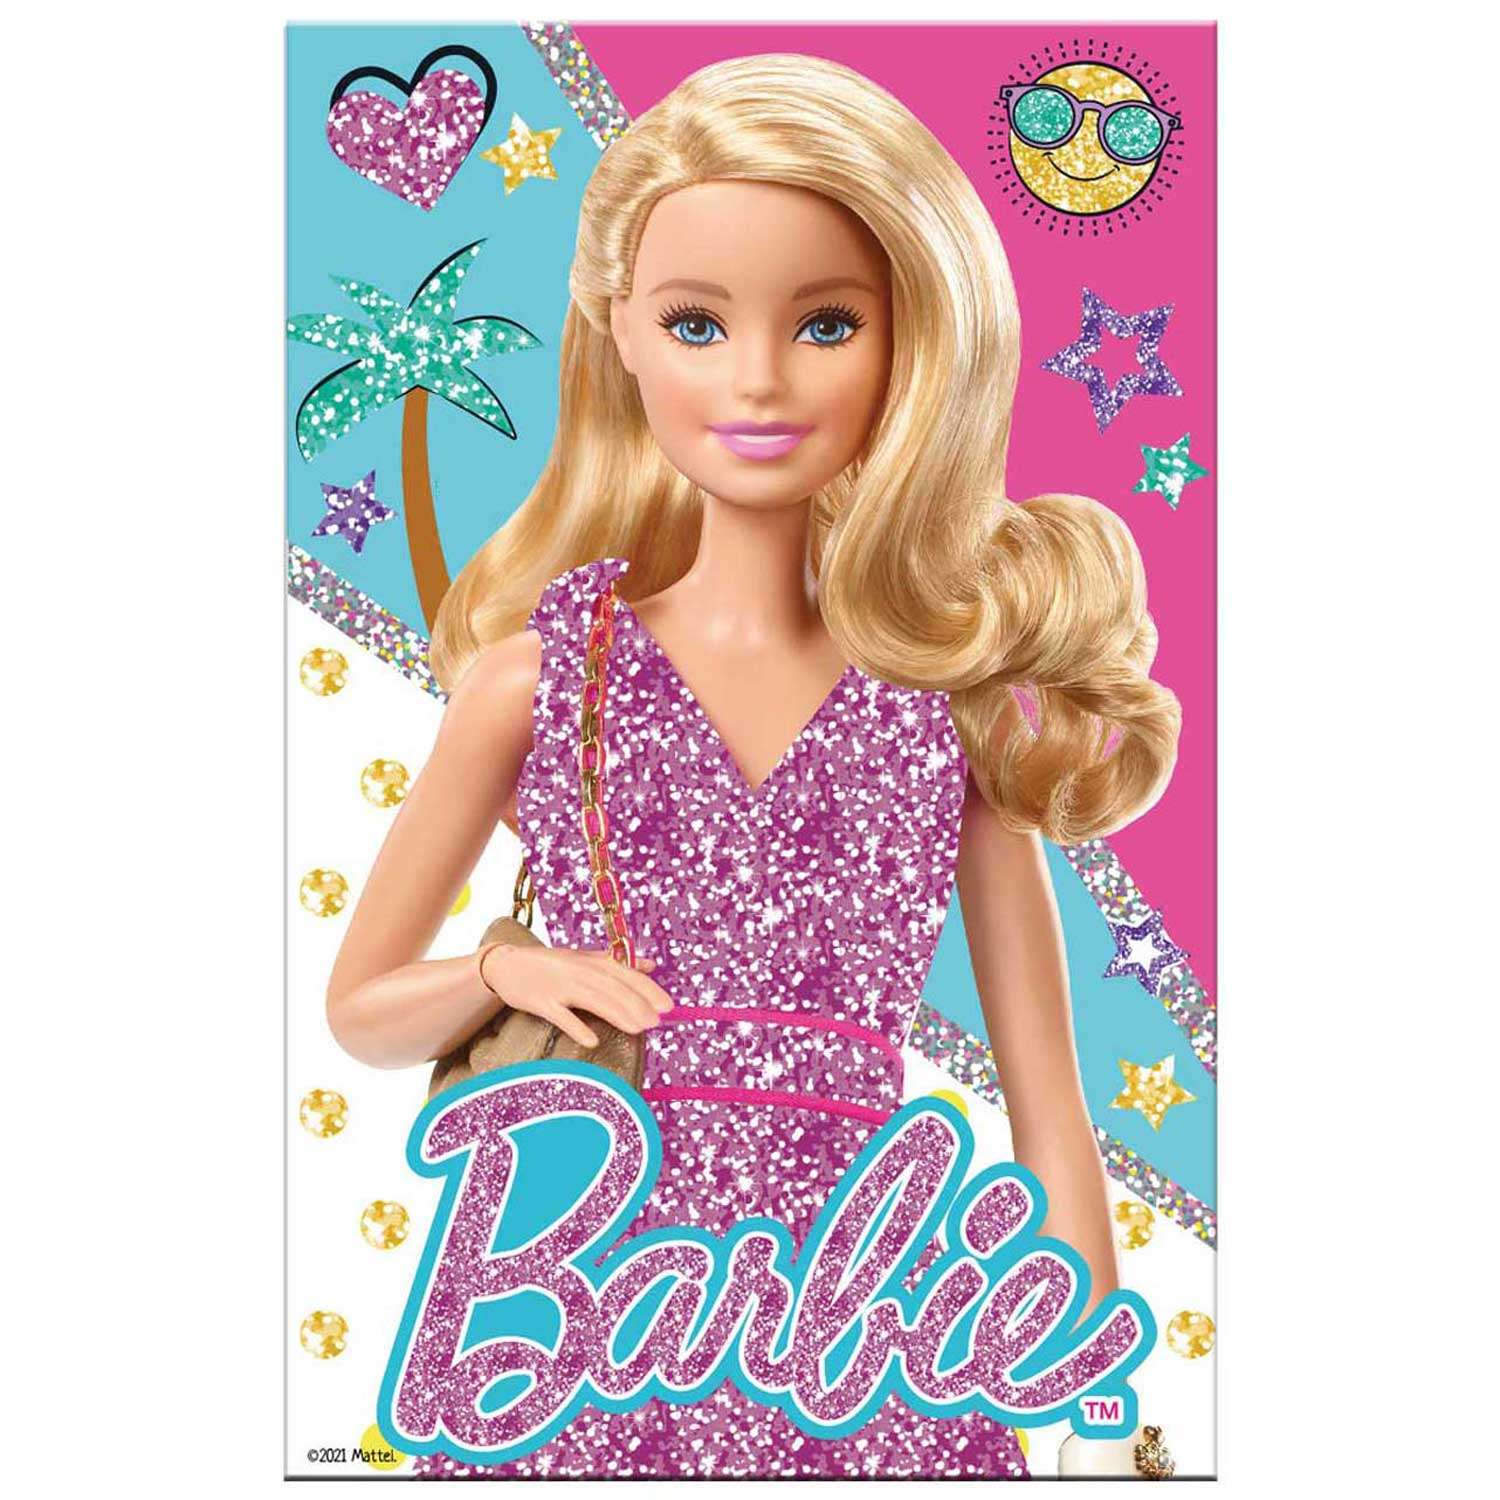 Аппликация из фольги Barbie набор для творчества из фольги Барби принцесса - фото 2